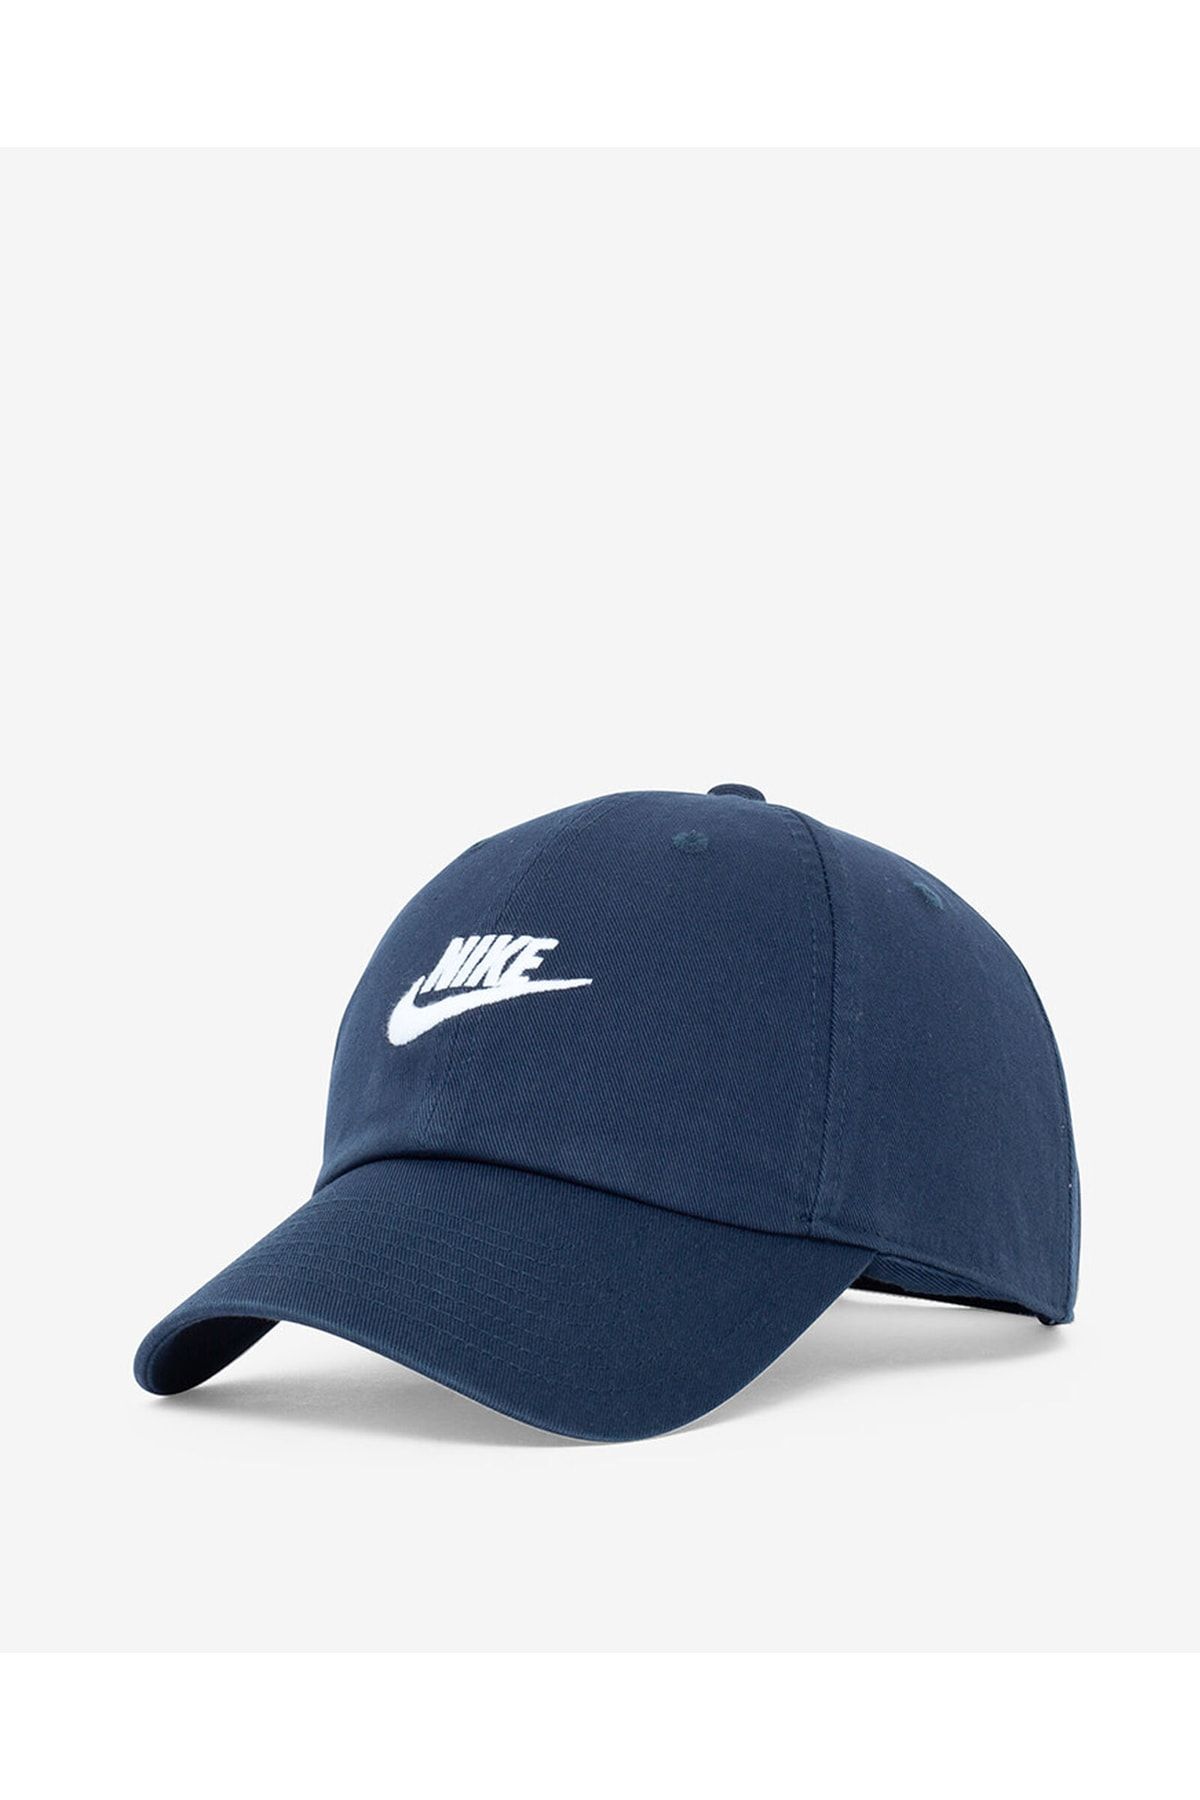 Nike Unisex Heritage 86 Washed Lacivert Şapka